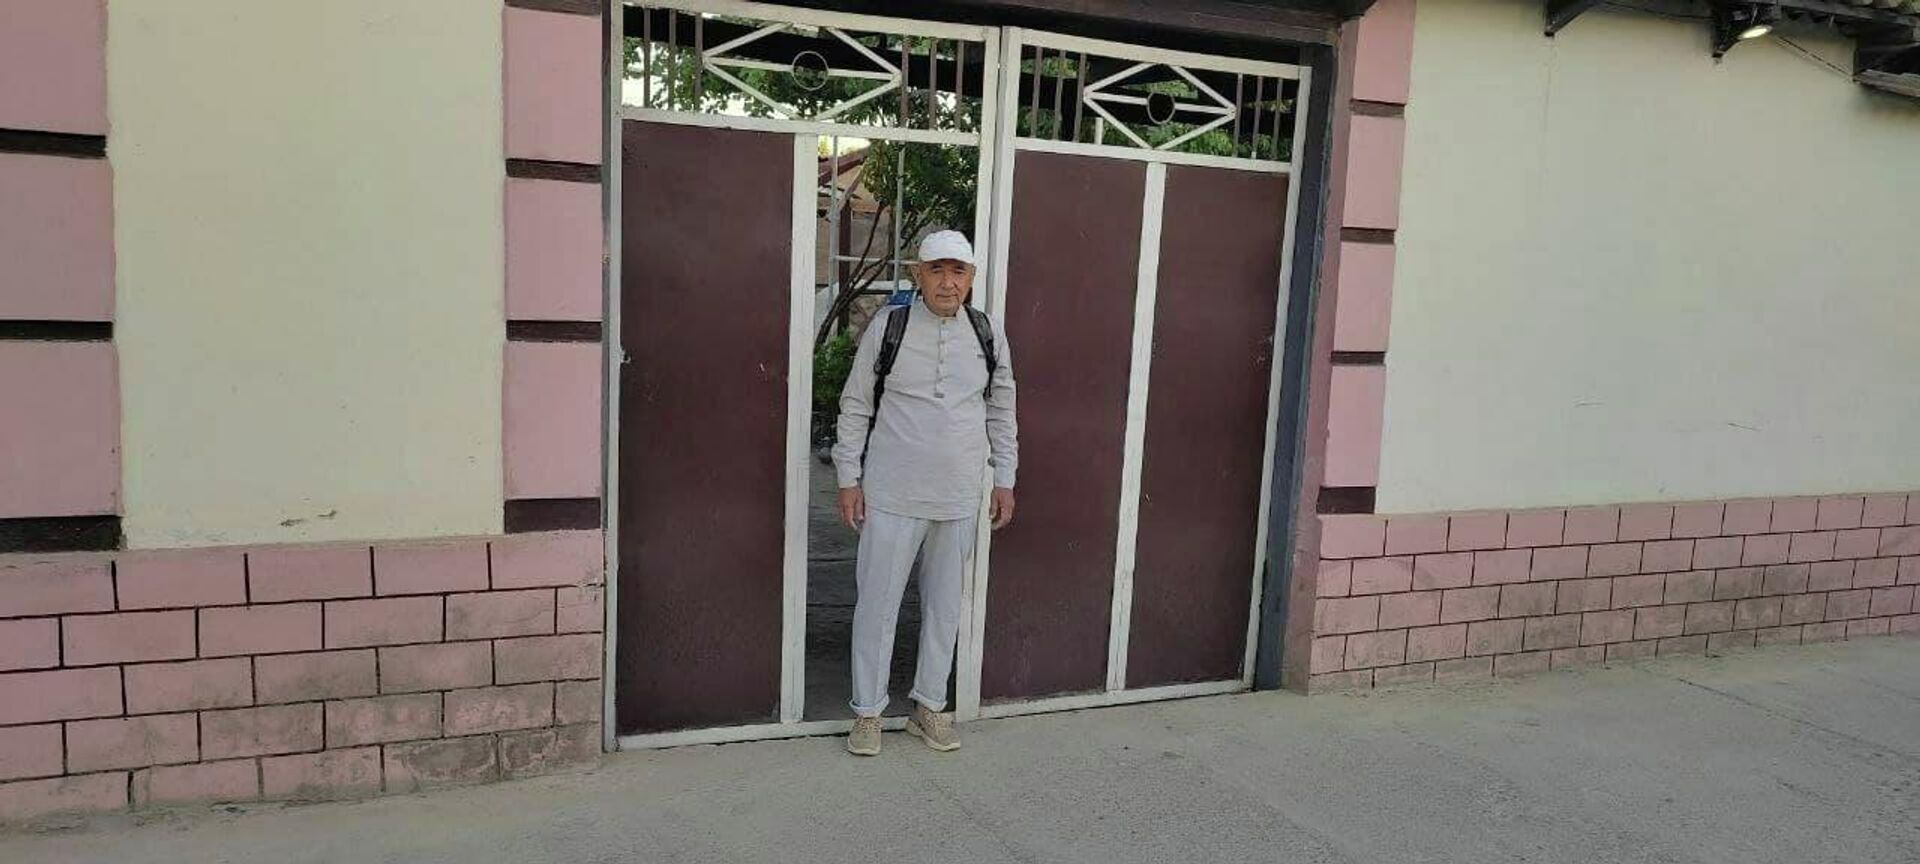 62-летний житель Яккабагского района отправился в пешую прогулку до Ферганской долины - Sputnik Узбекистан, 1920, 23.06.2021